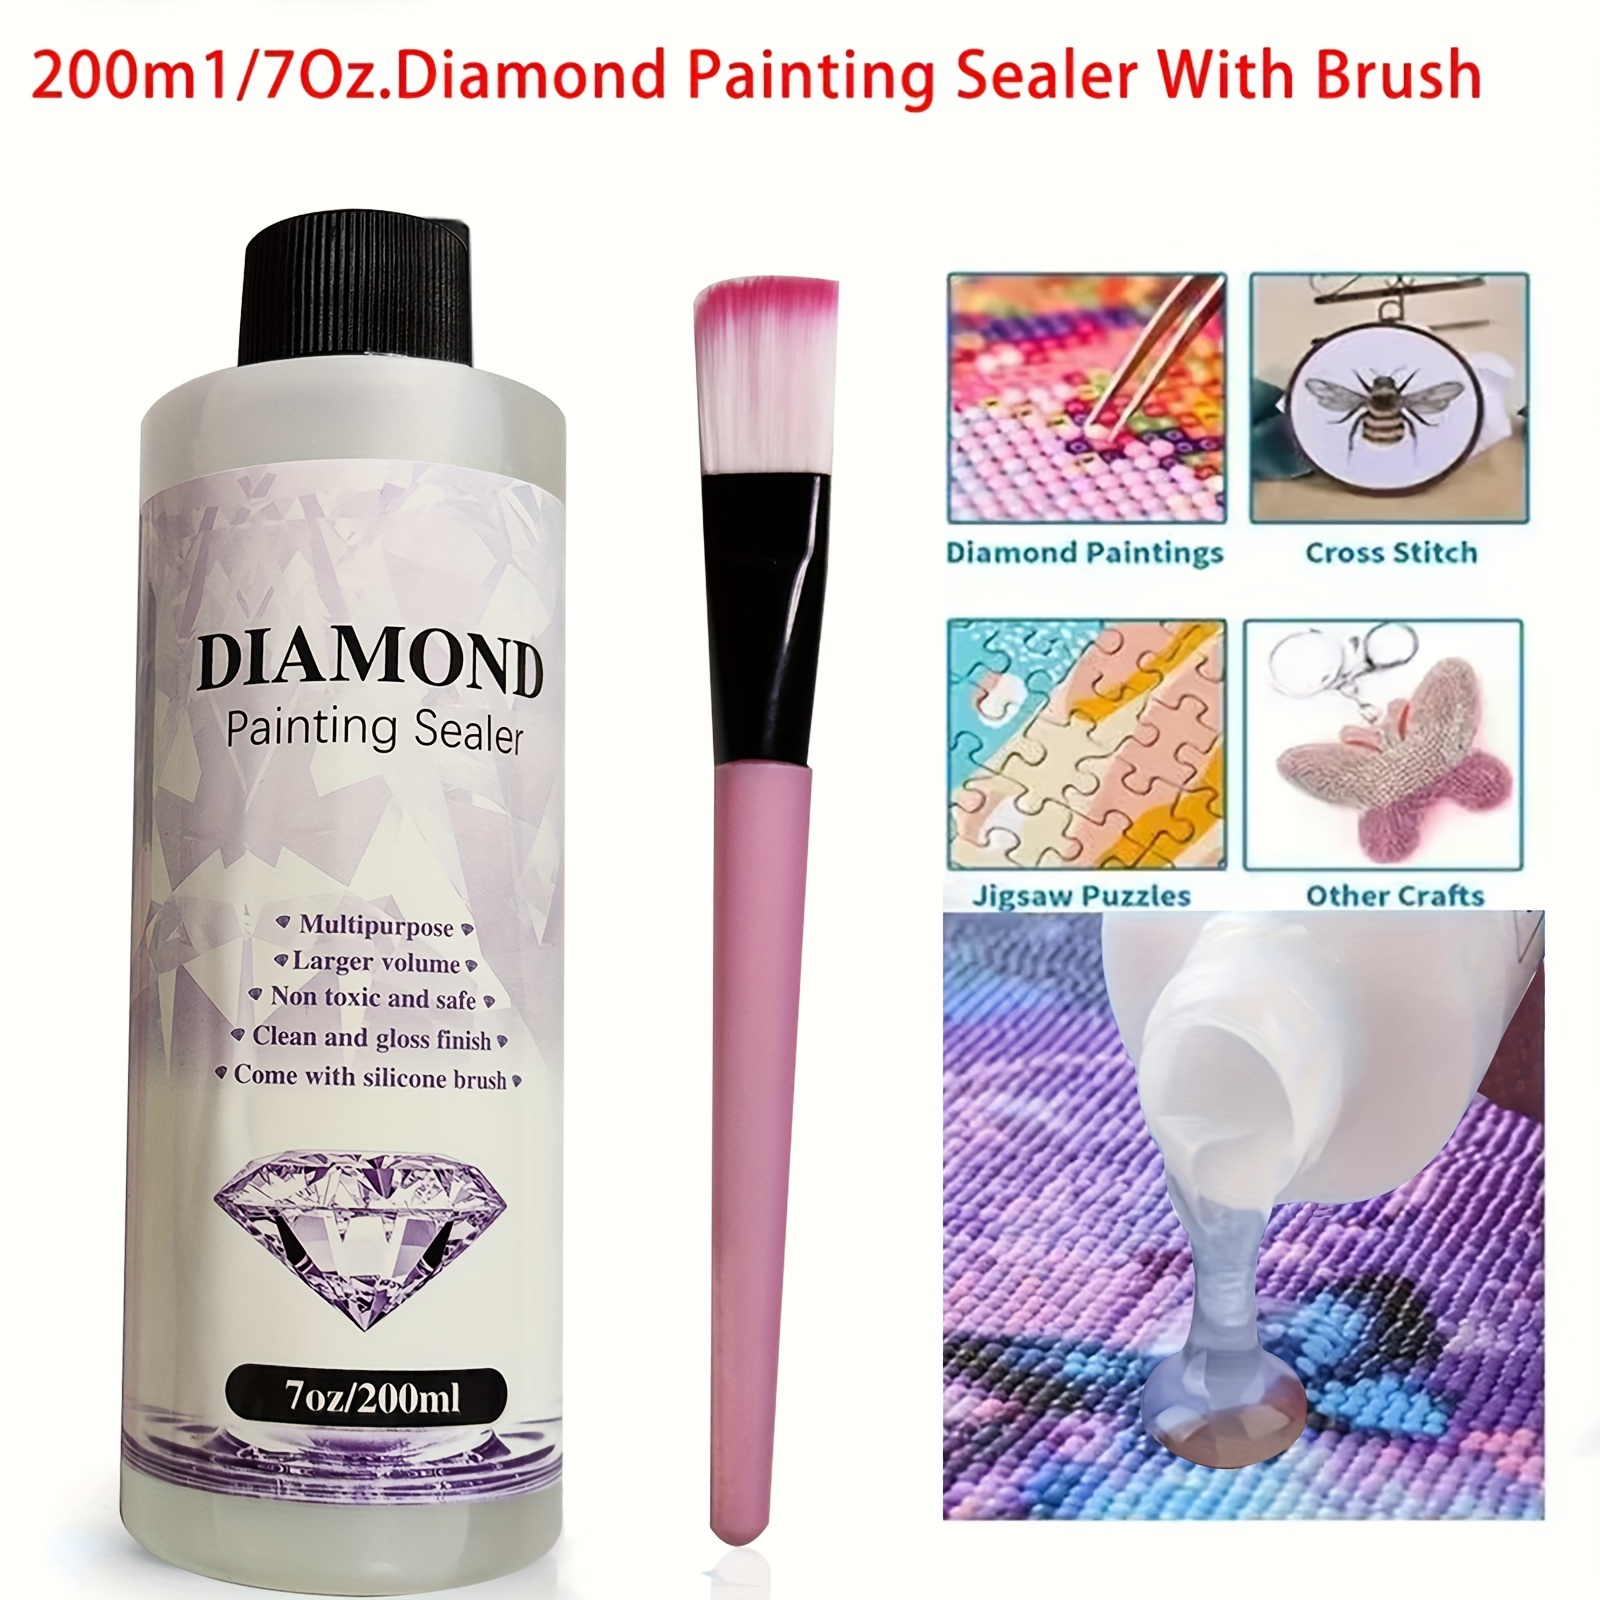 Tigilt Diamond Painting Sealer Multipurpose 4 oz/ 120 ml